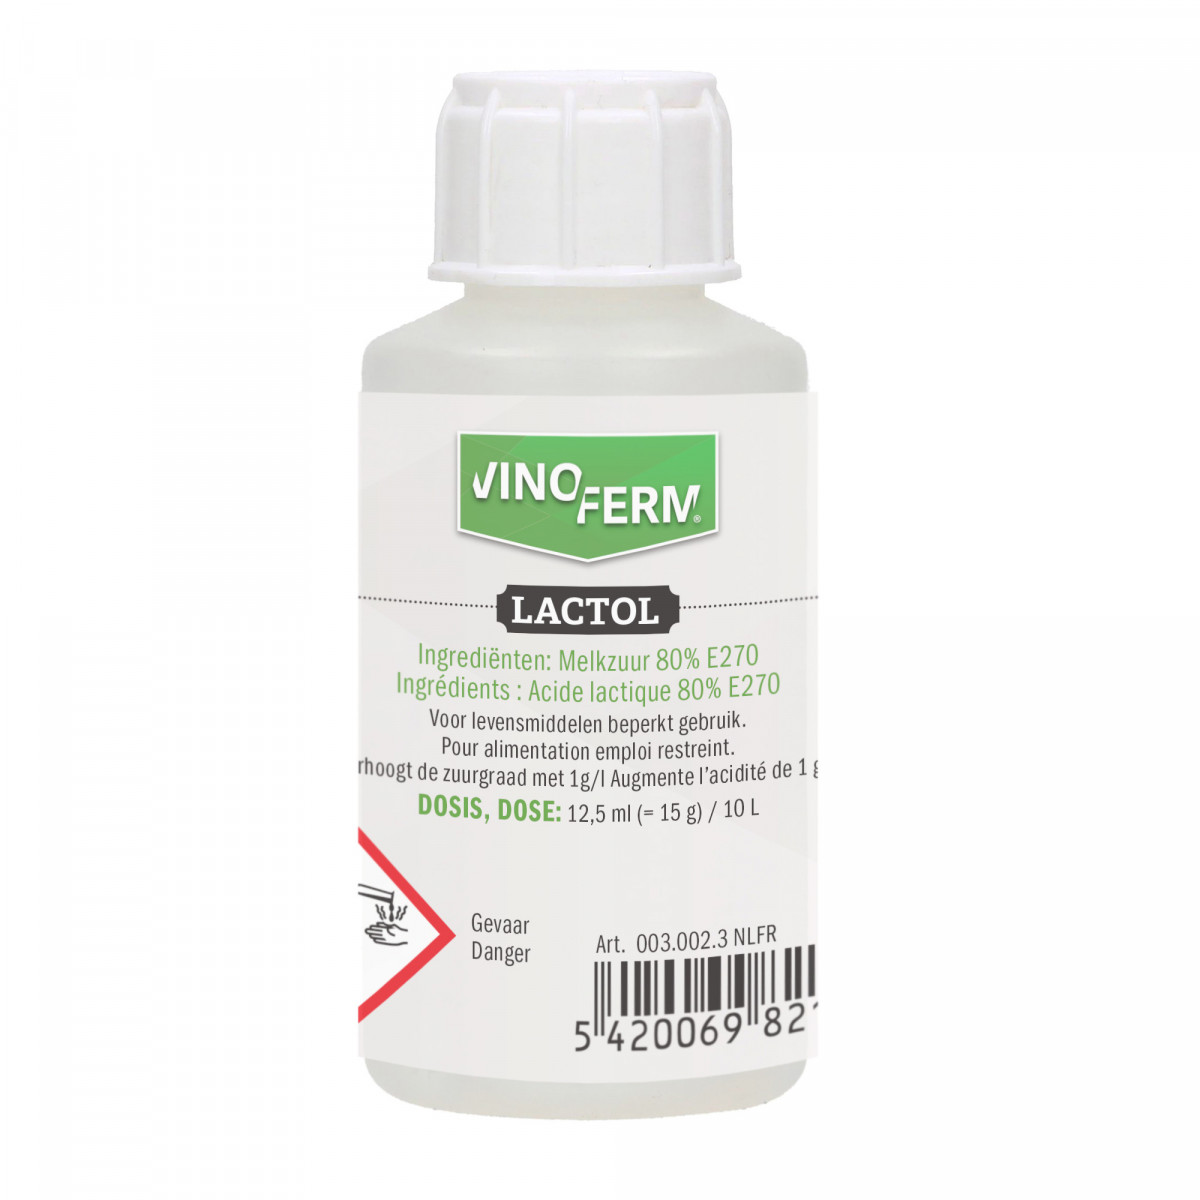 acide lactique 80% VINOFERM lactol 100ml NLFR